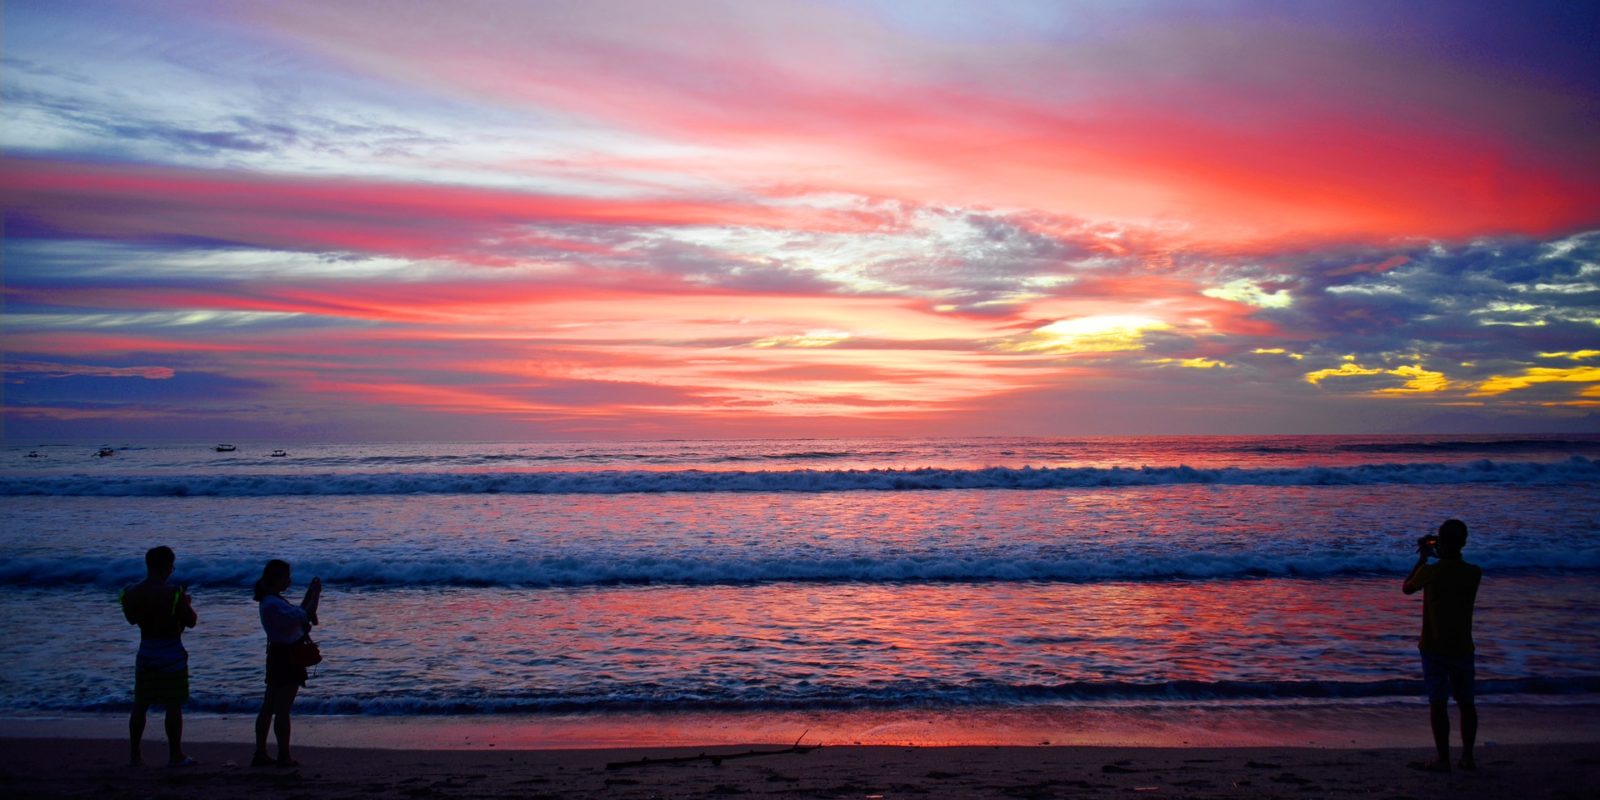 Sunset at Kuta Beach, Bali, Indonesia